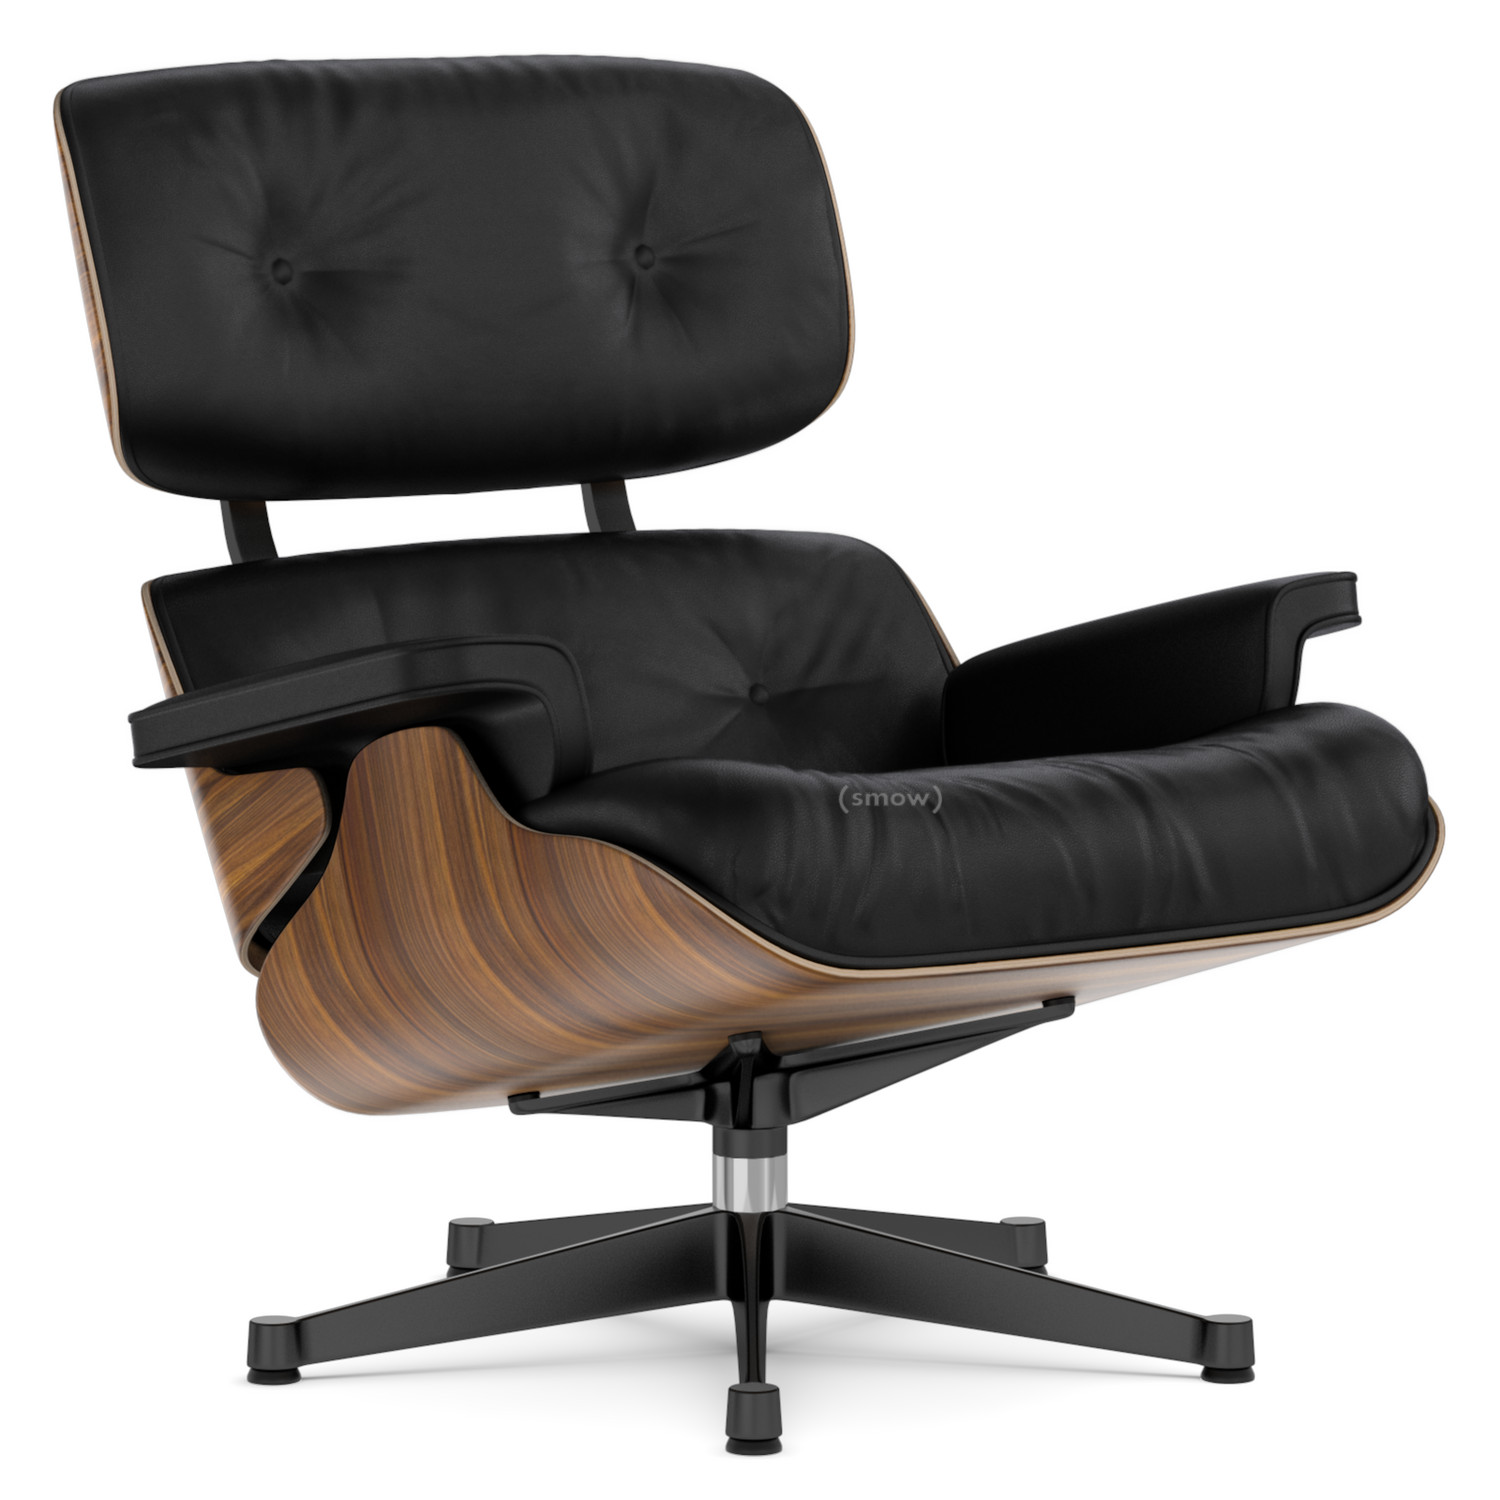 Voorkeur dennenboom Eigenlijk Vitra Lounge Chair von Charles & Ray Eames, 1956 - Designermöbel von smow.de